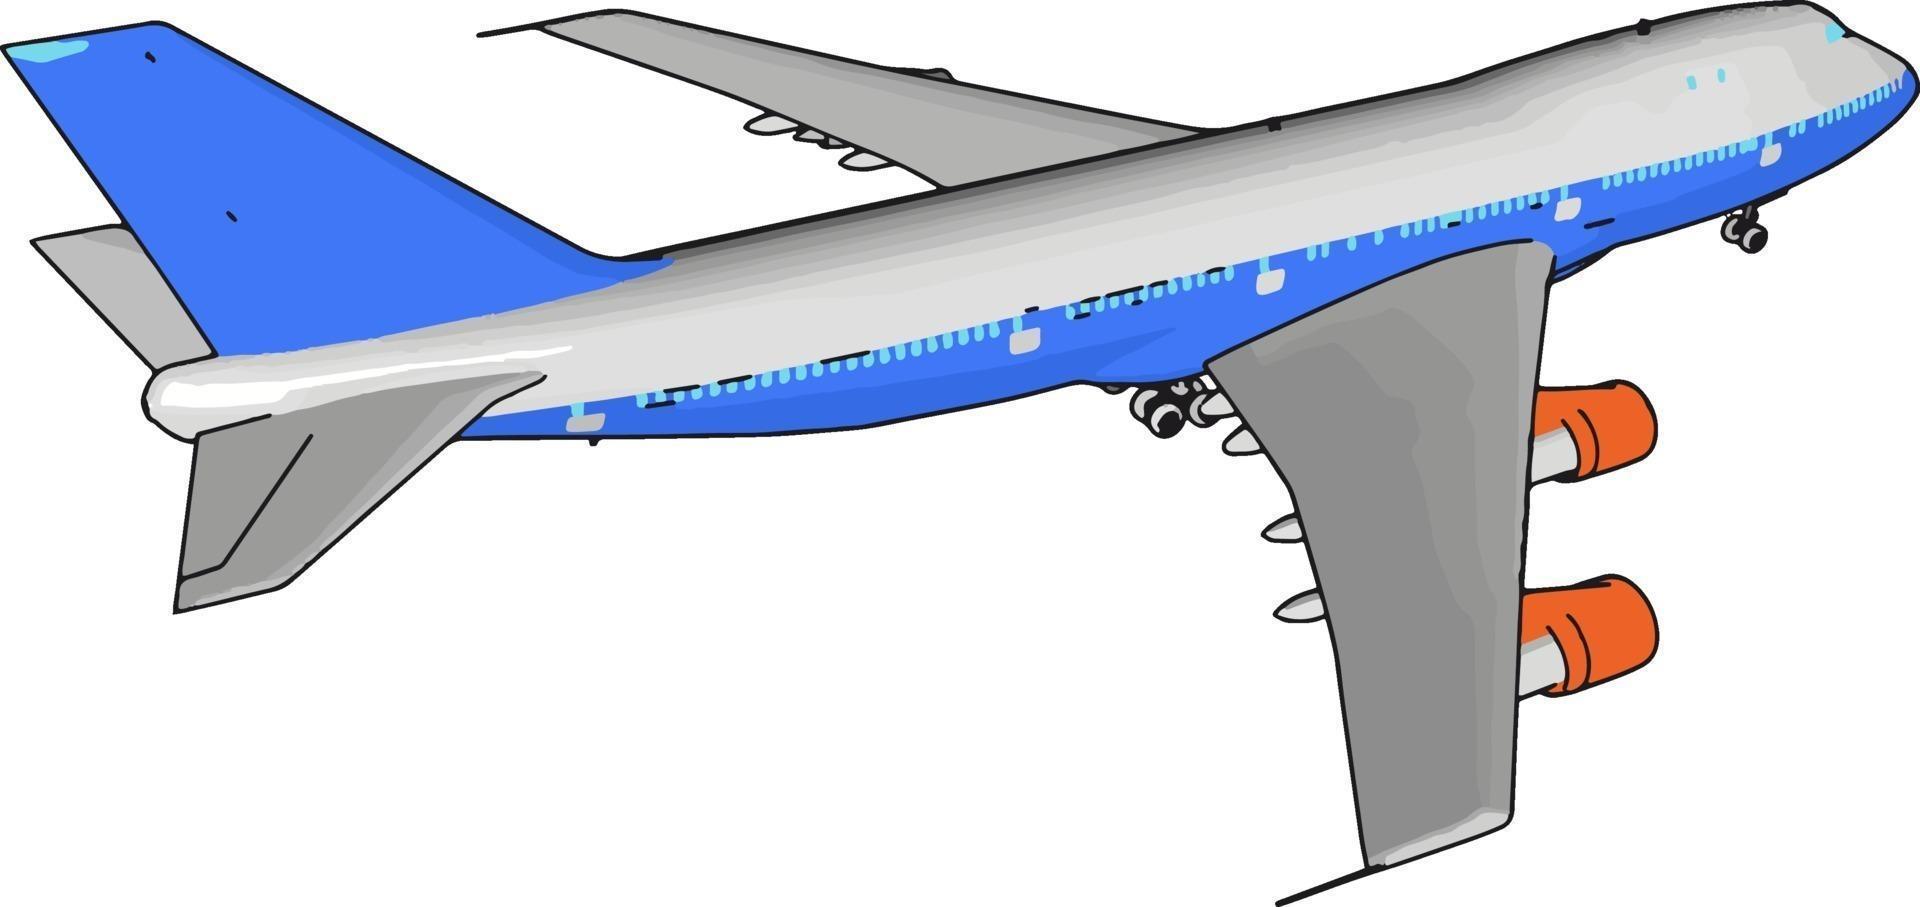 Blue passenger plane, illustration, vector on white background.